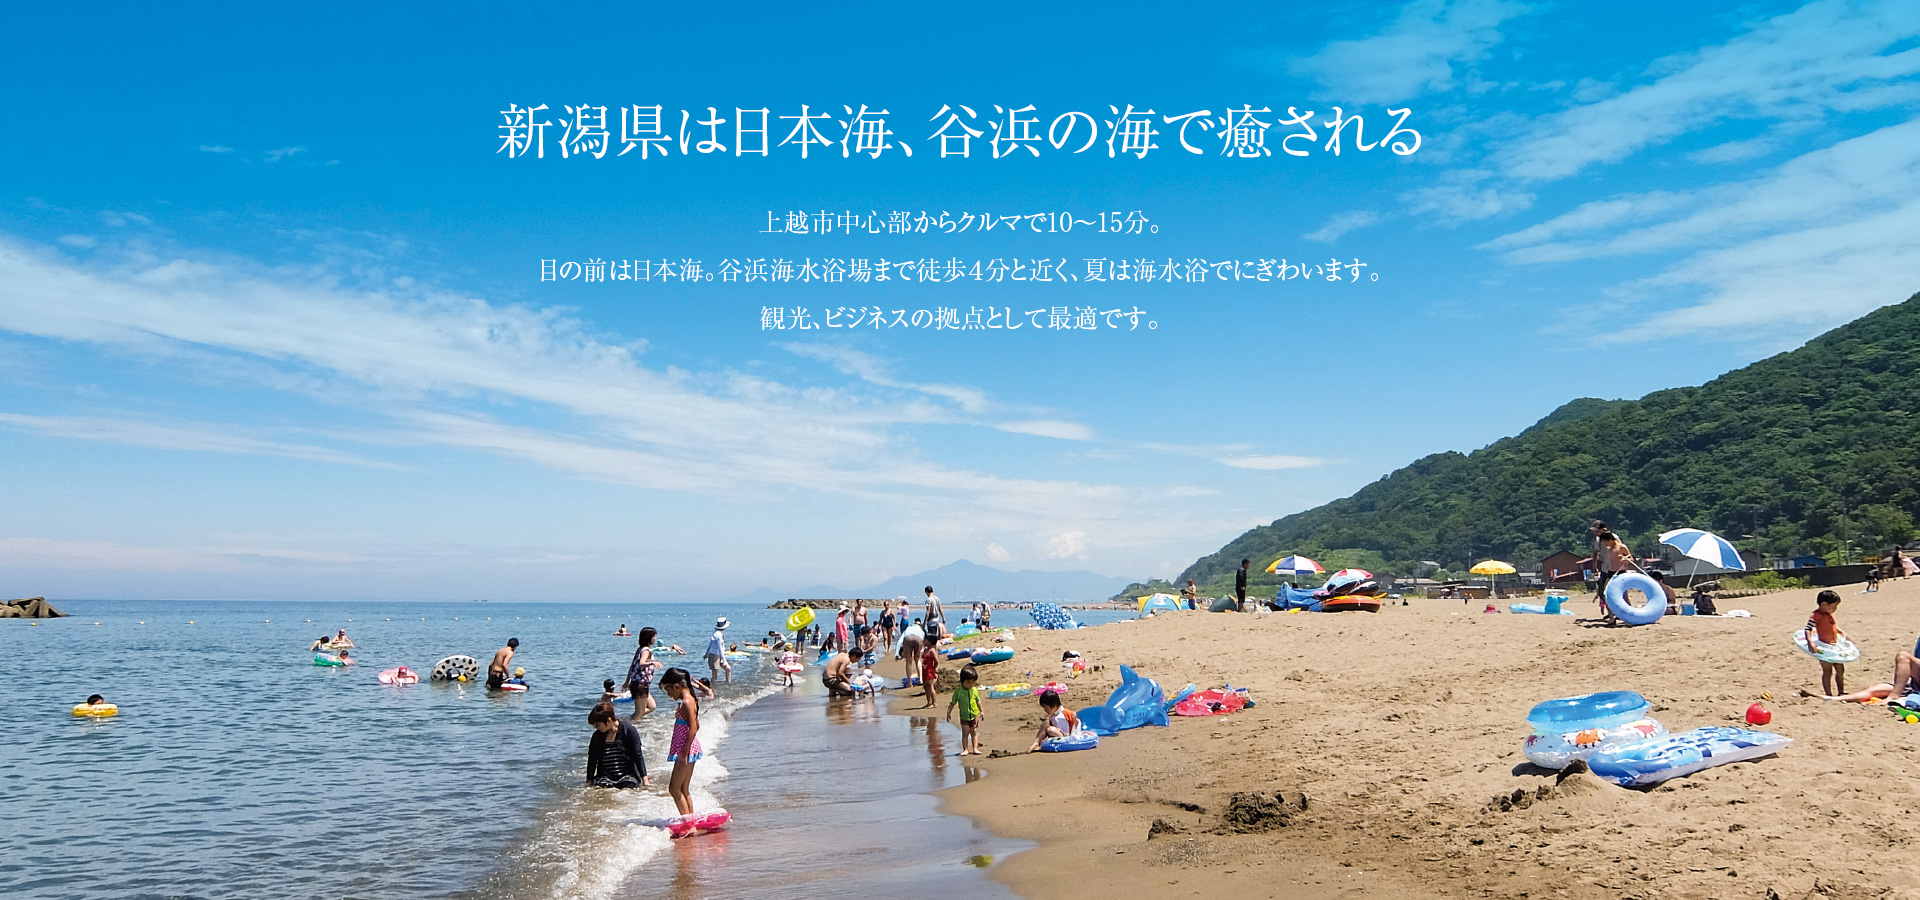 新潟県は日本海、 谷浜の海で癒される